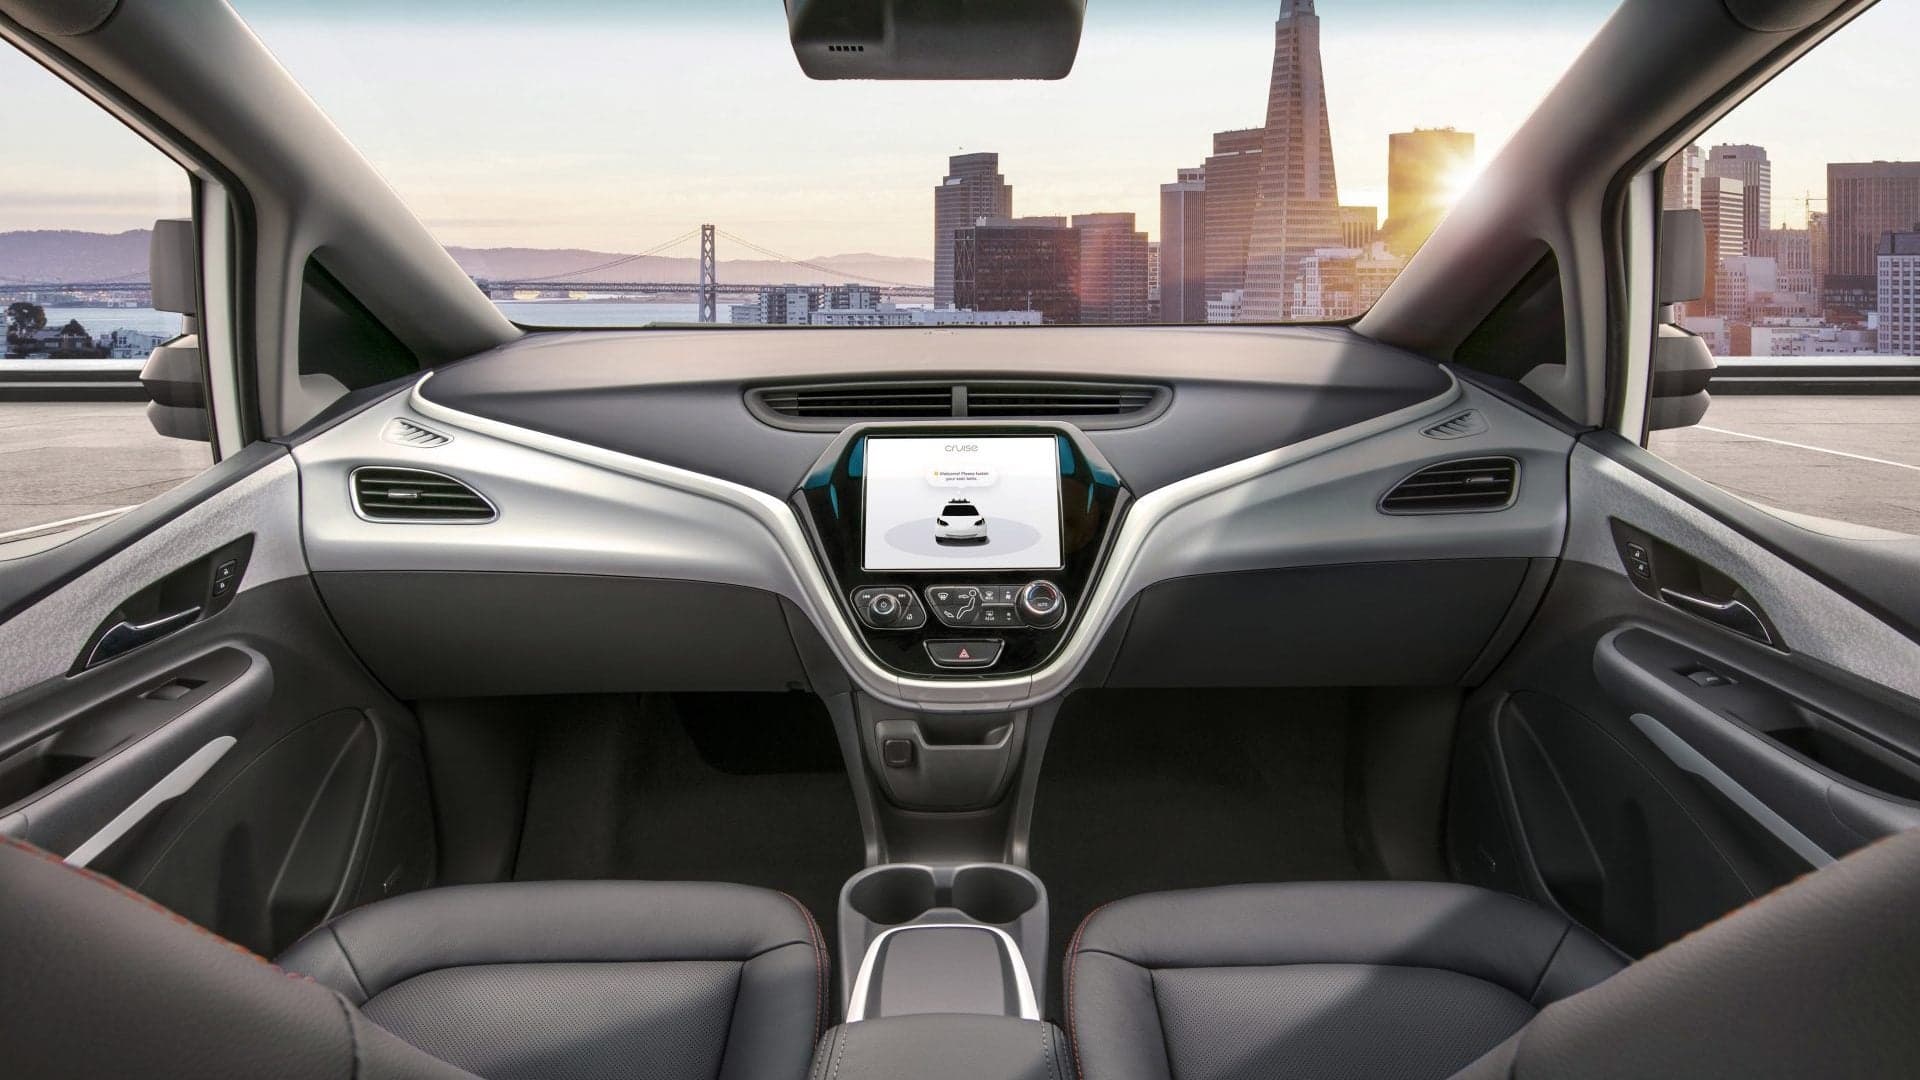 General Motors: Autonomous Vehicle Production Begins Next Year